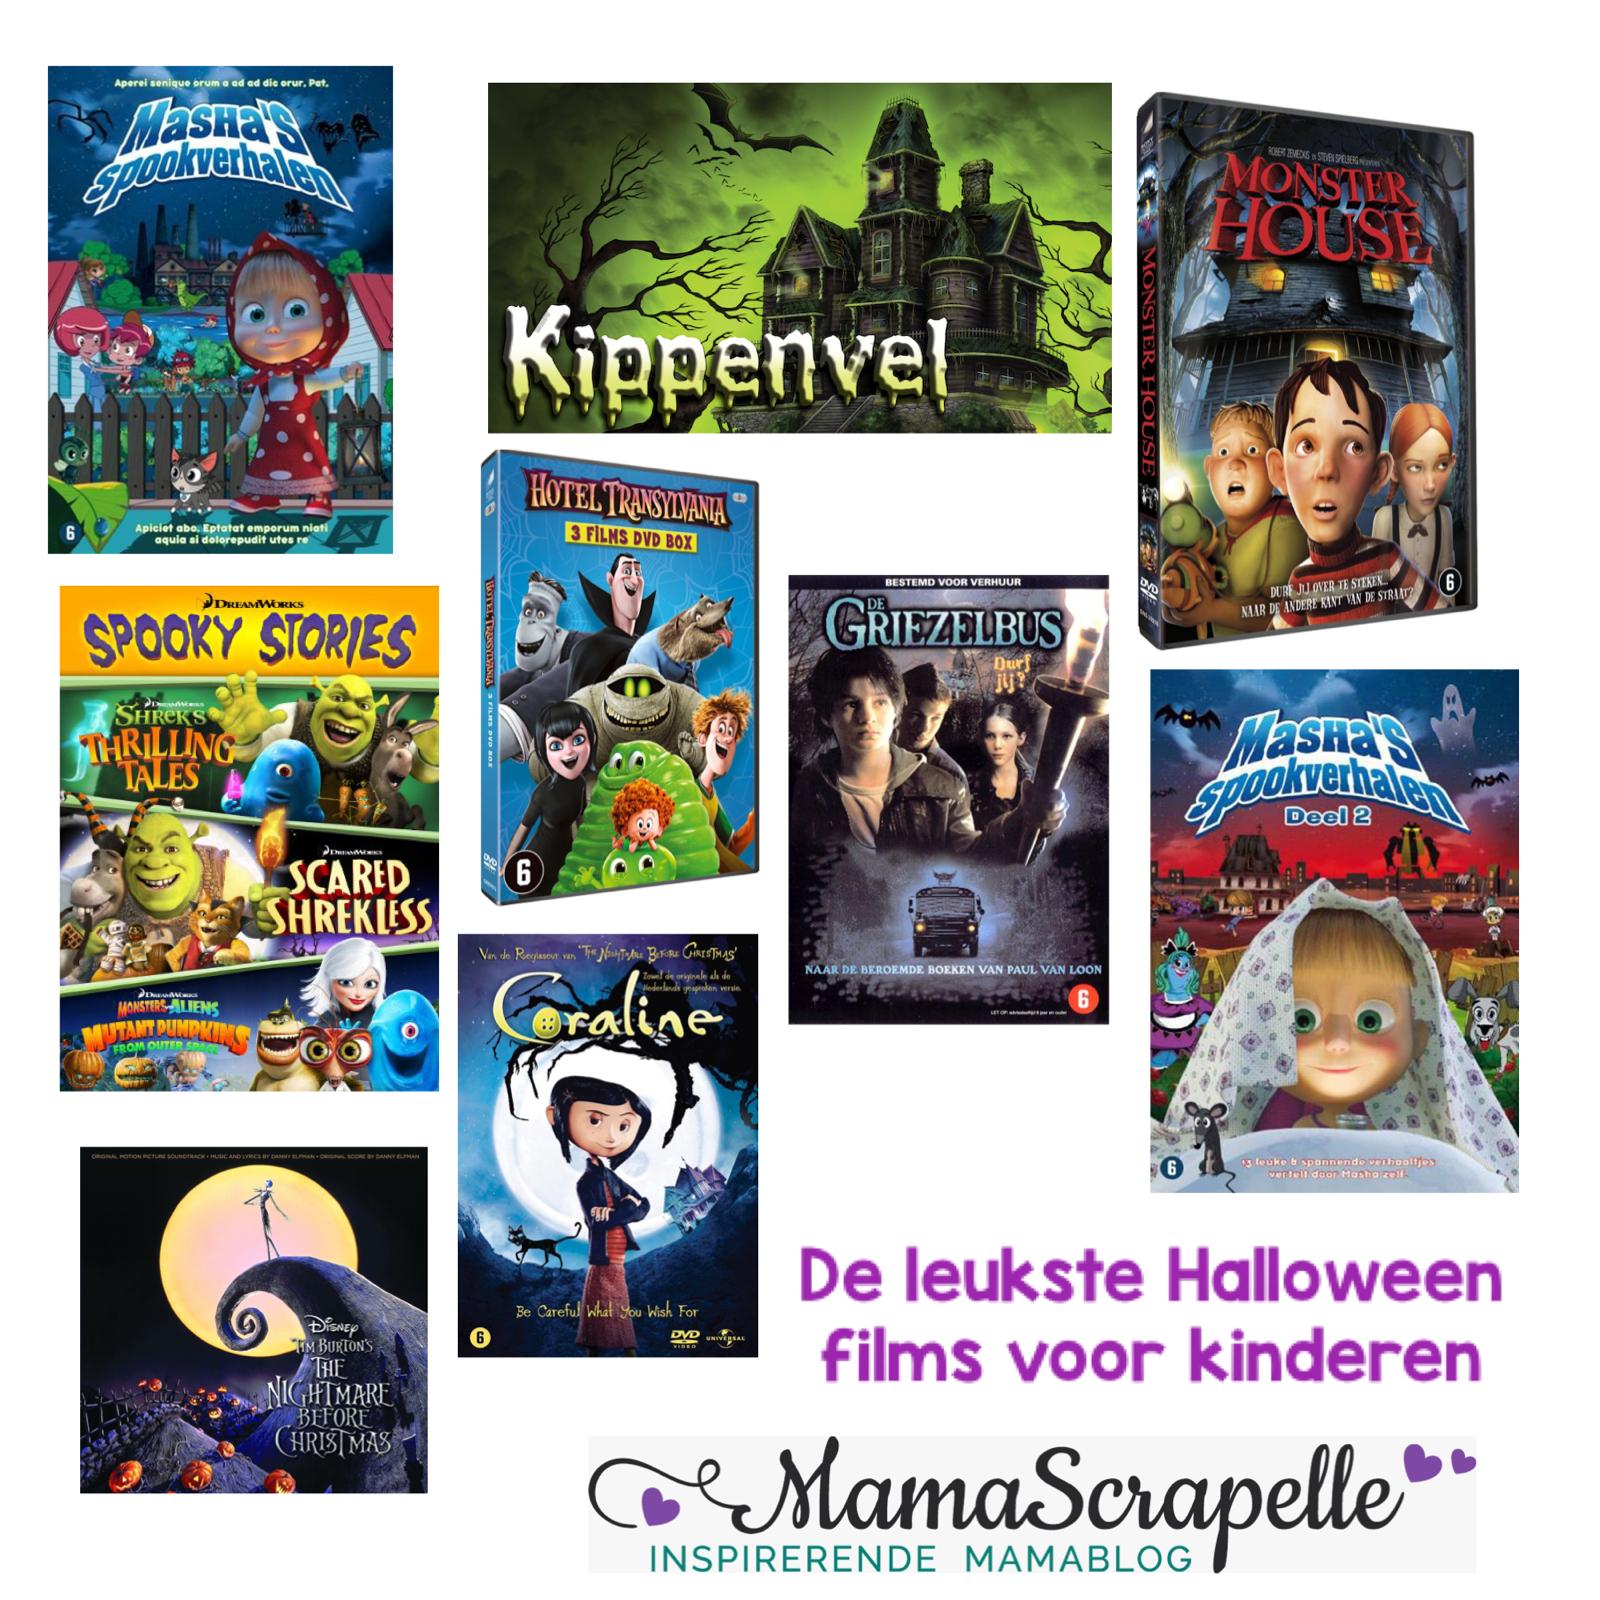 Mondwater Donder Verlaten De leukste Halloween films voor kinderen, een selectie -